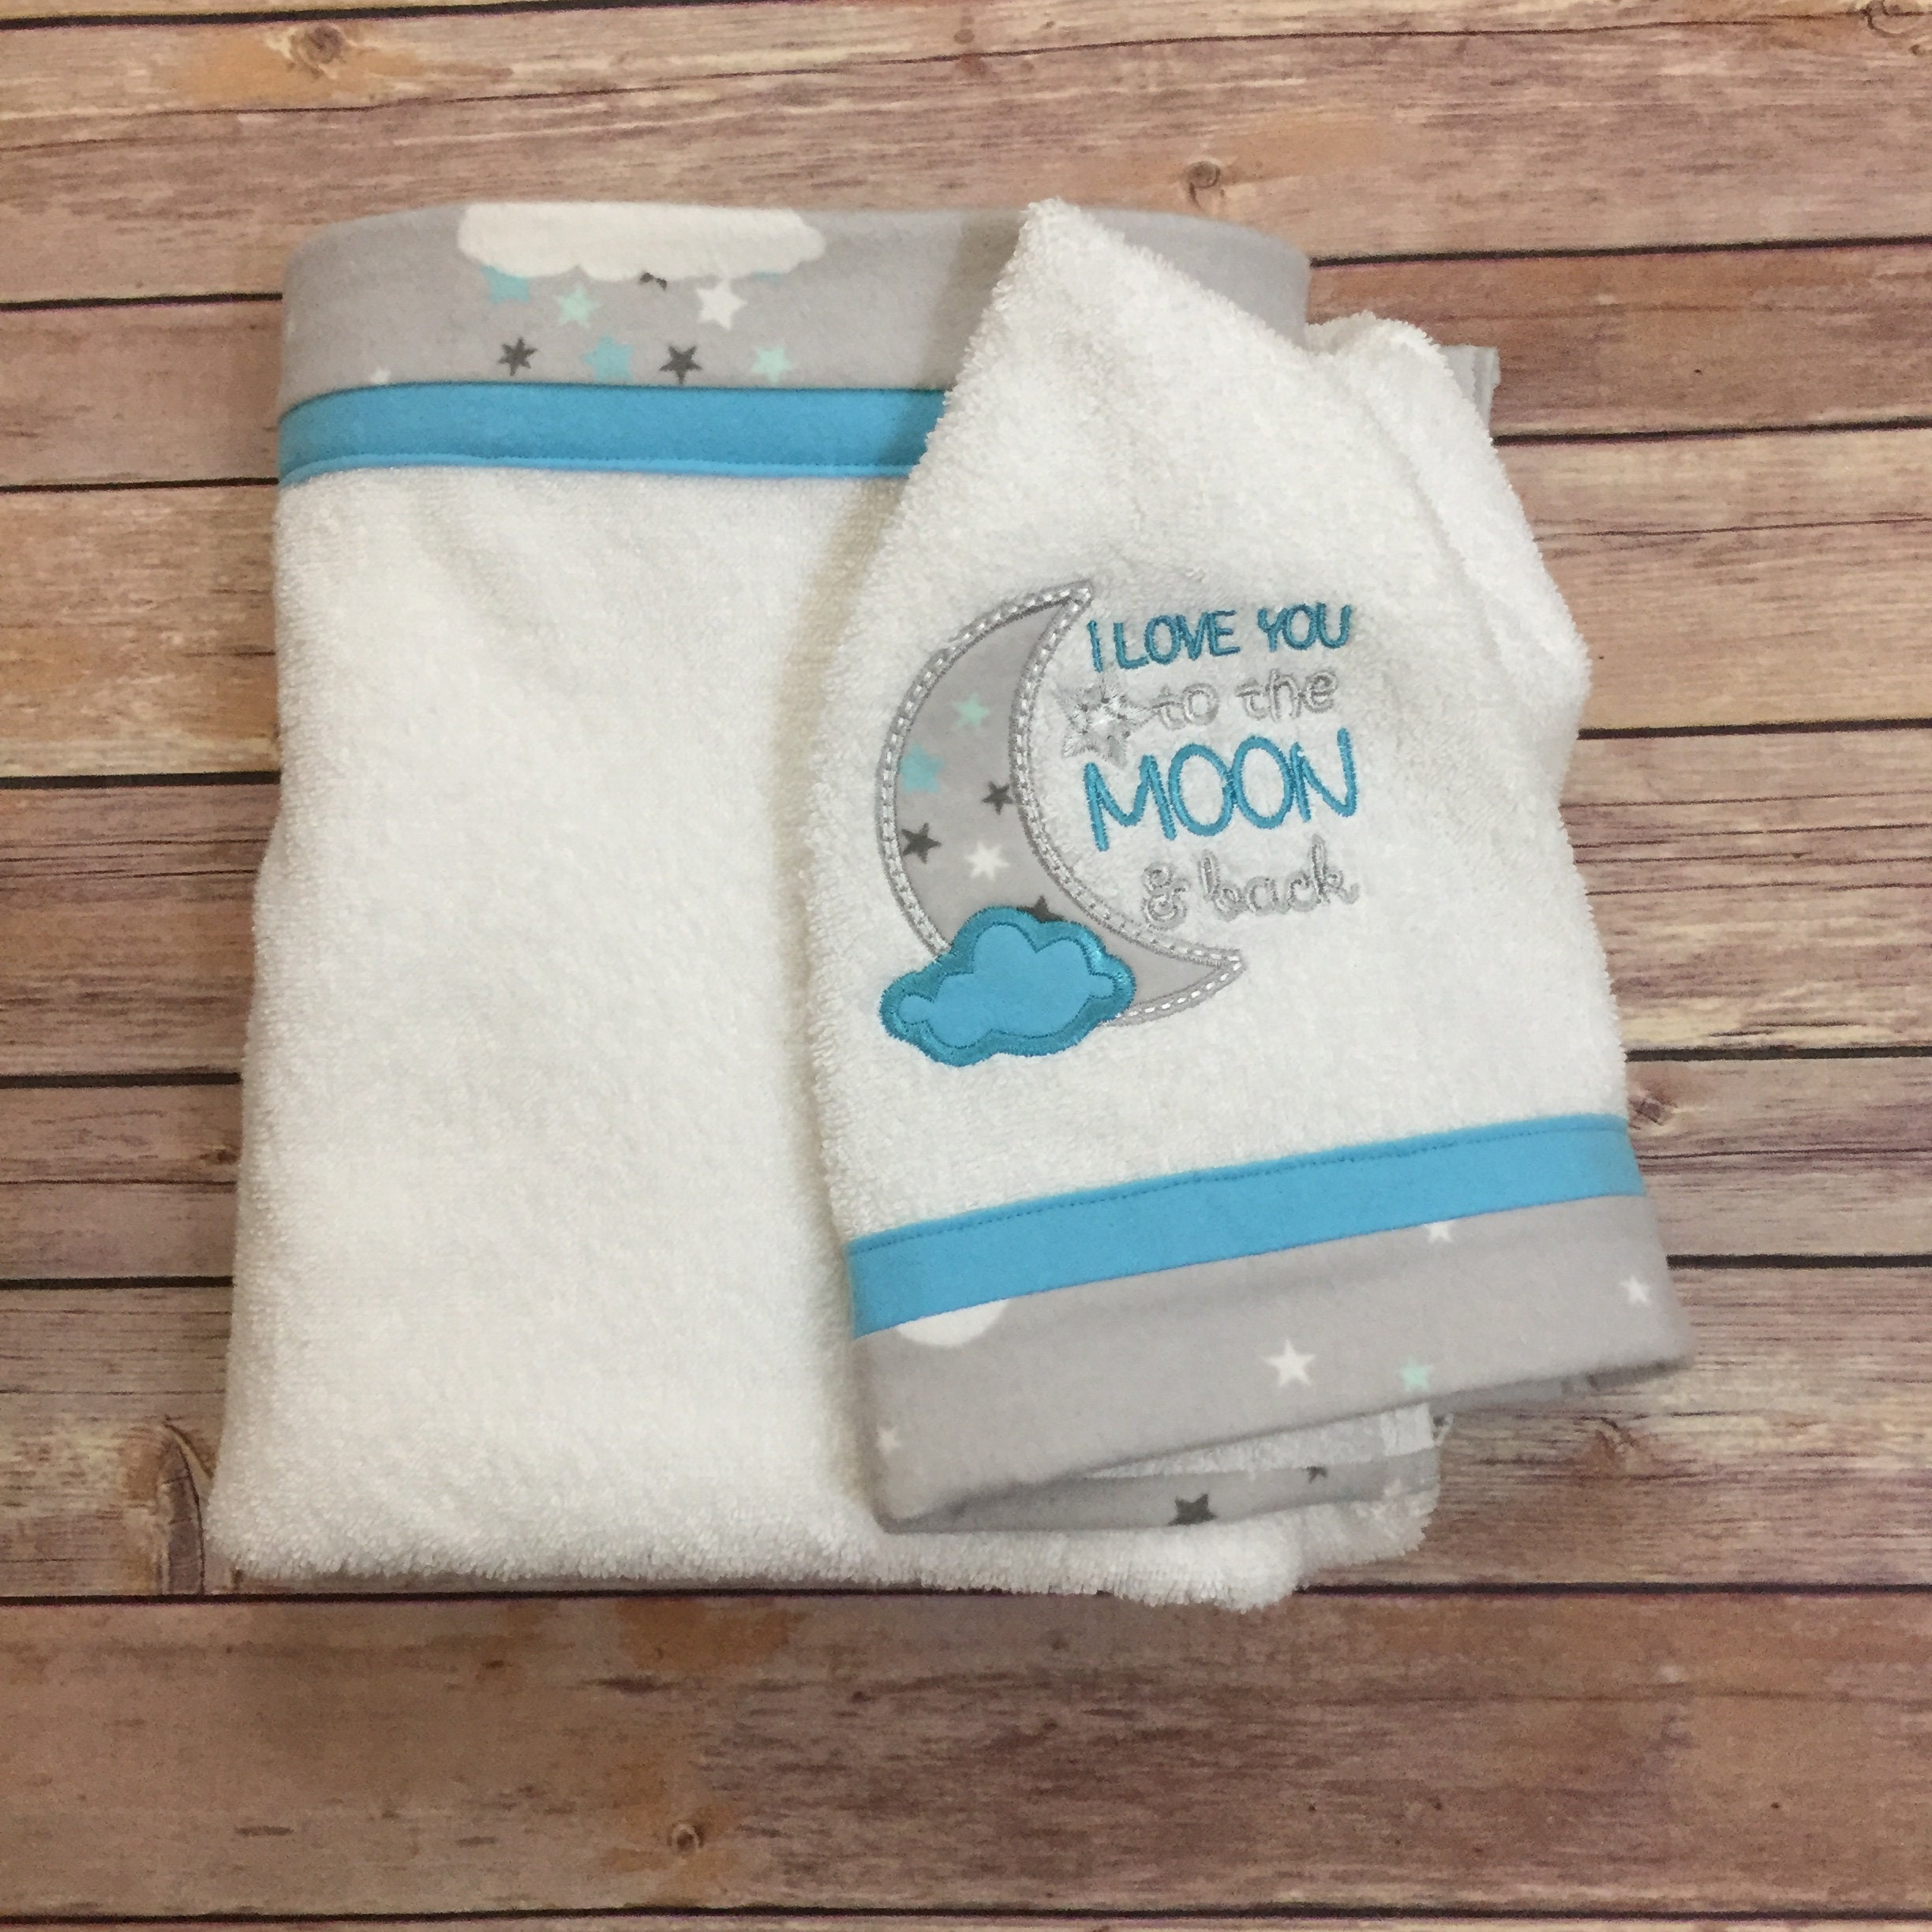 In The Hoop Fabric Towels for 10 5/8 x 10 5/8 hoop - unpaper towels